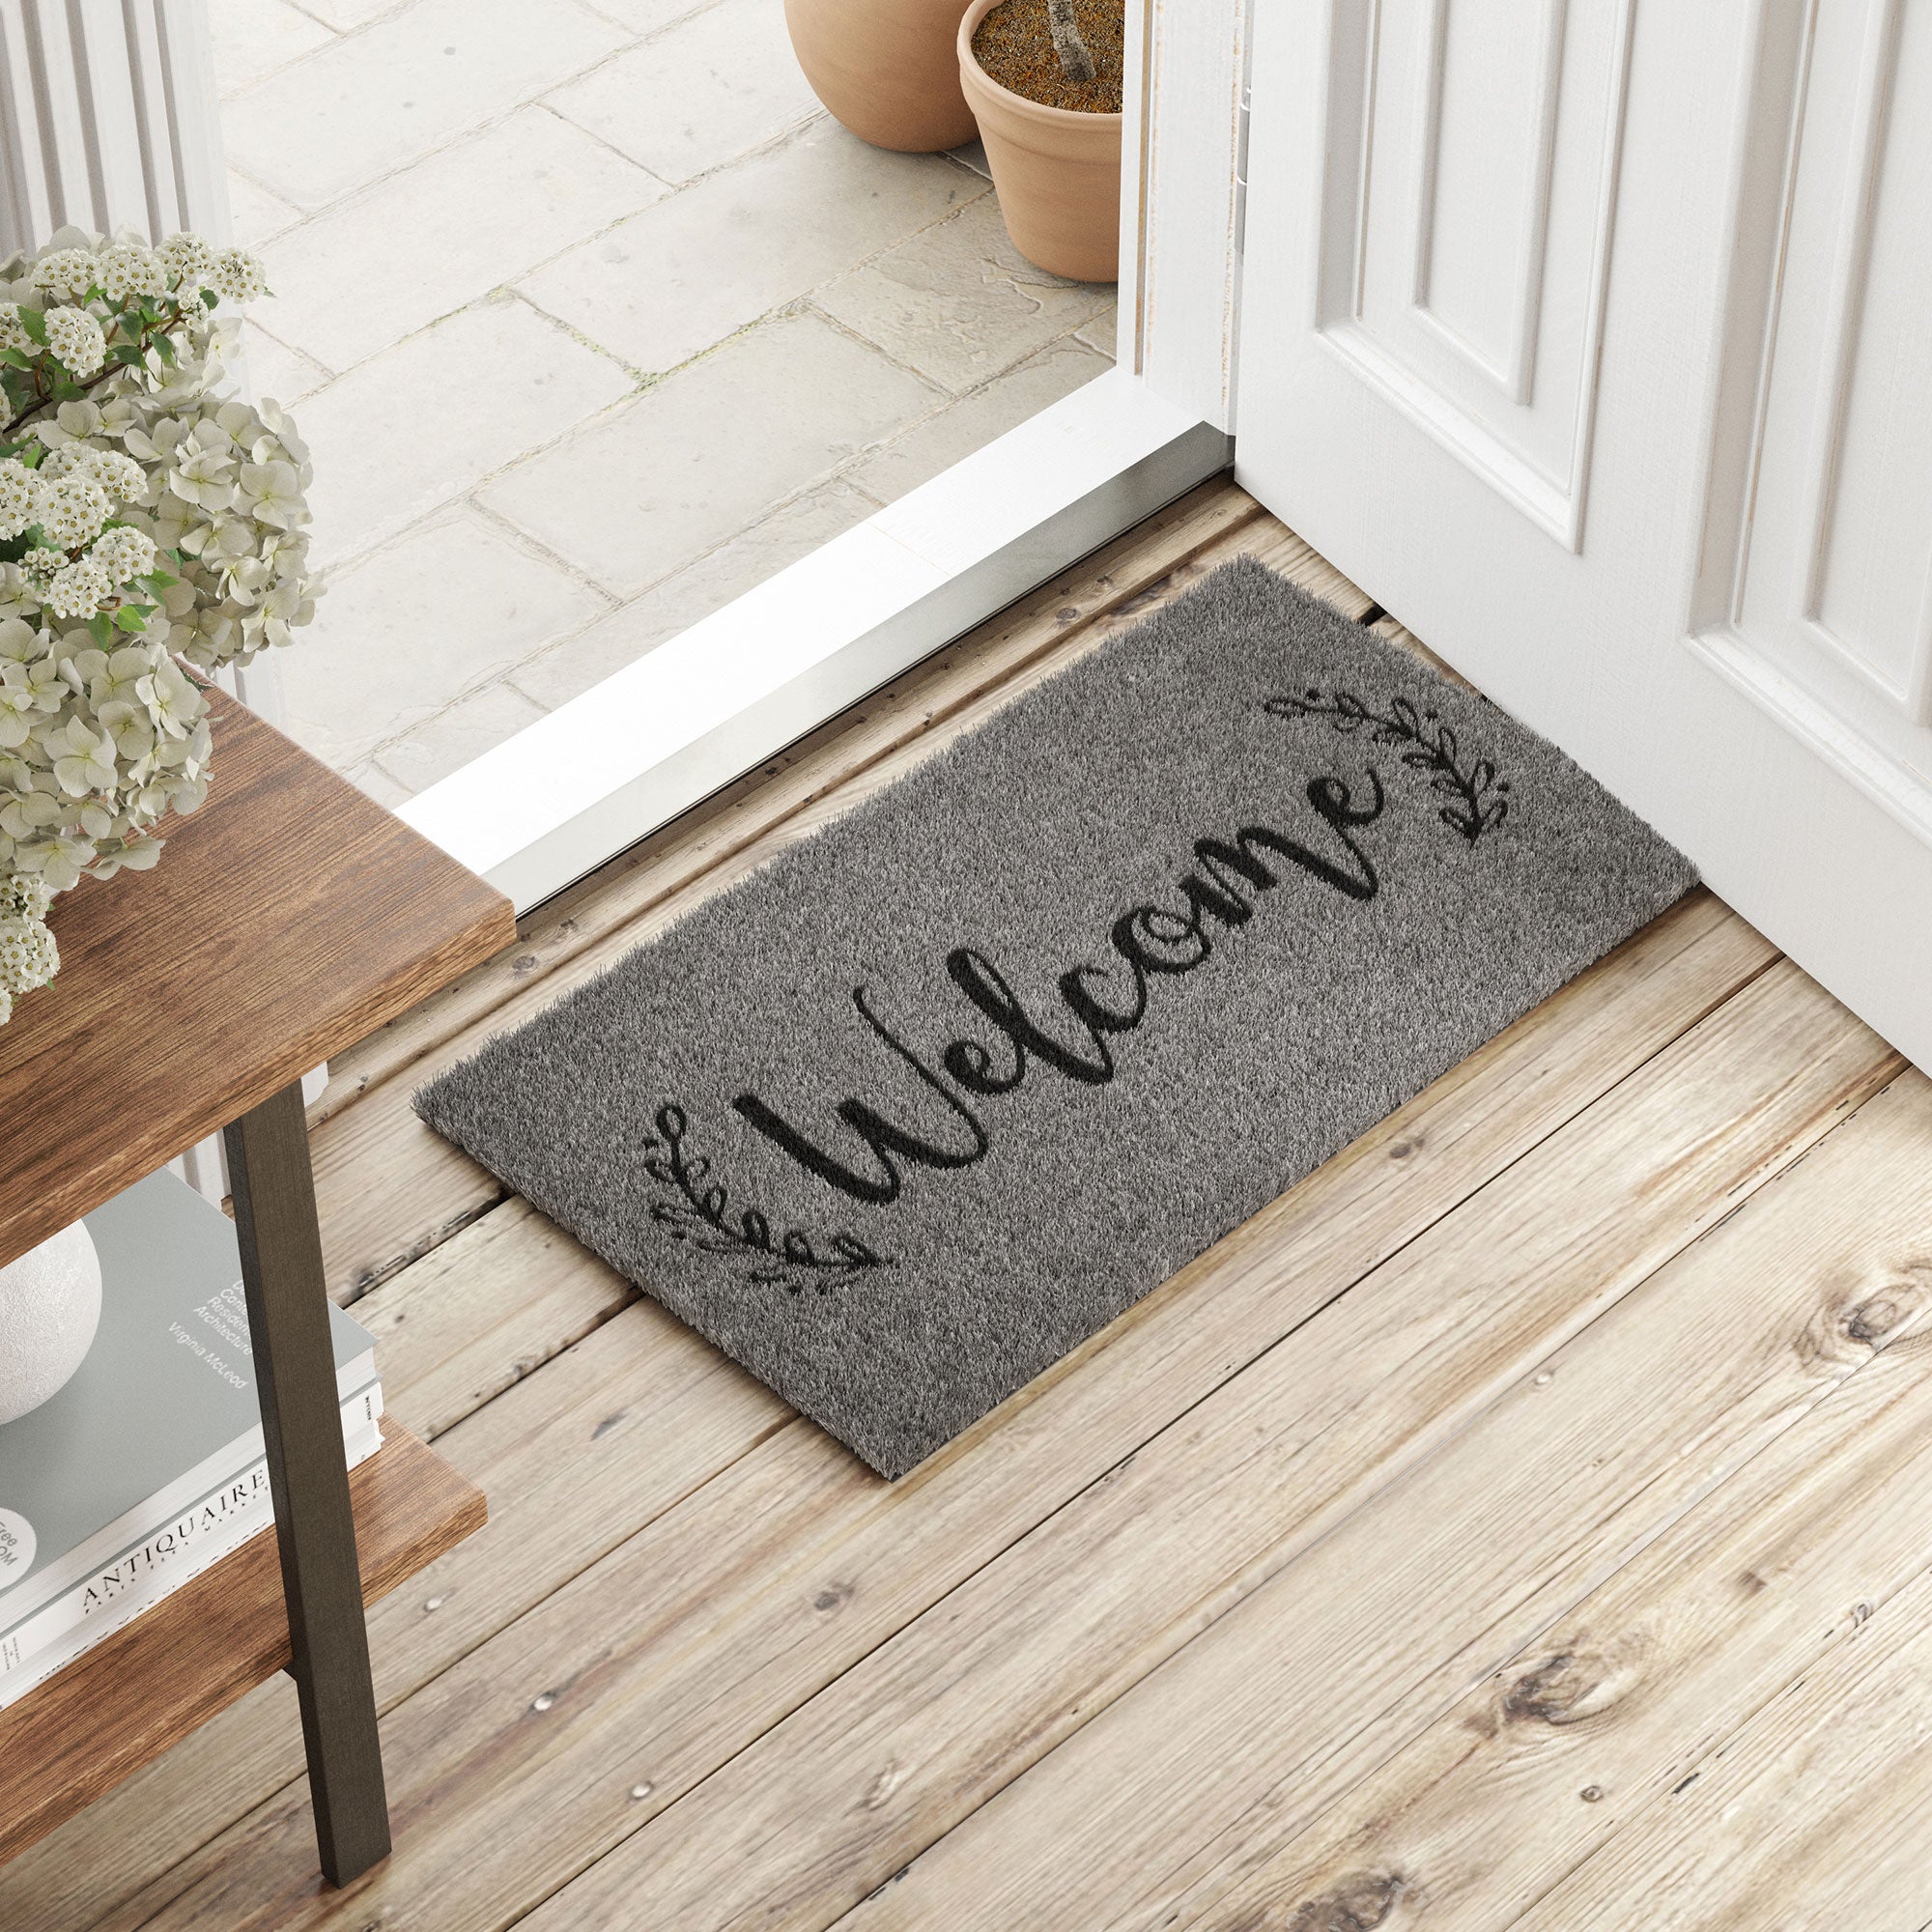 Barnyard Designs 'Welcome' Half Moon Doormat Welcome Mat for Outdoors, Large Front Door Entrance Mat, 30x17, Brown